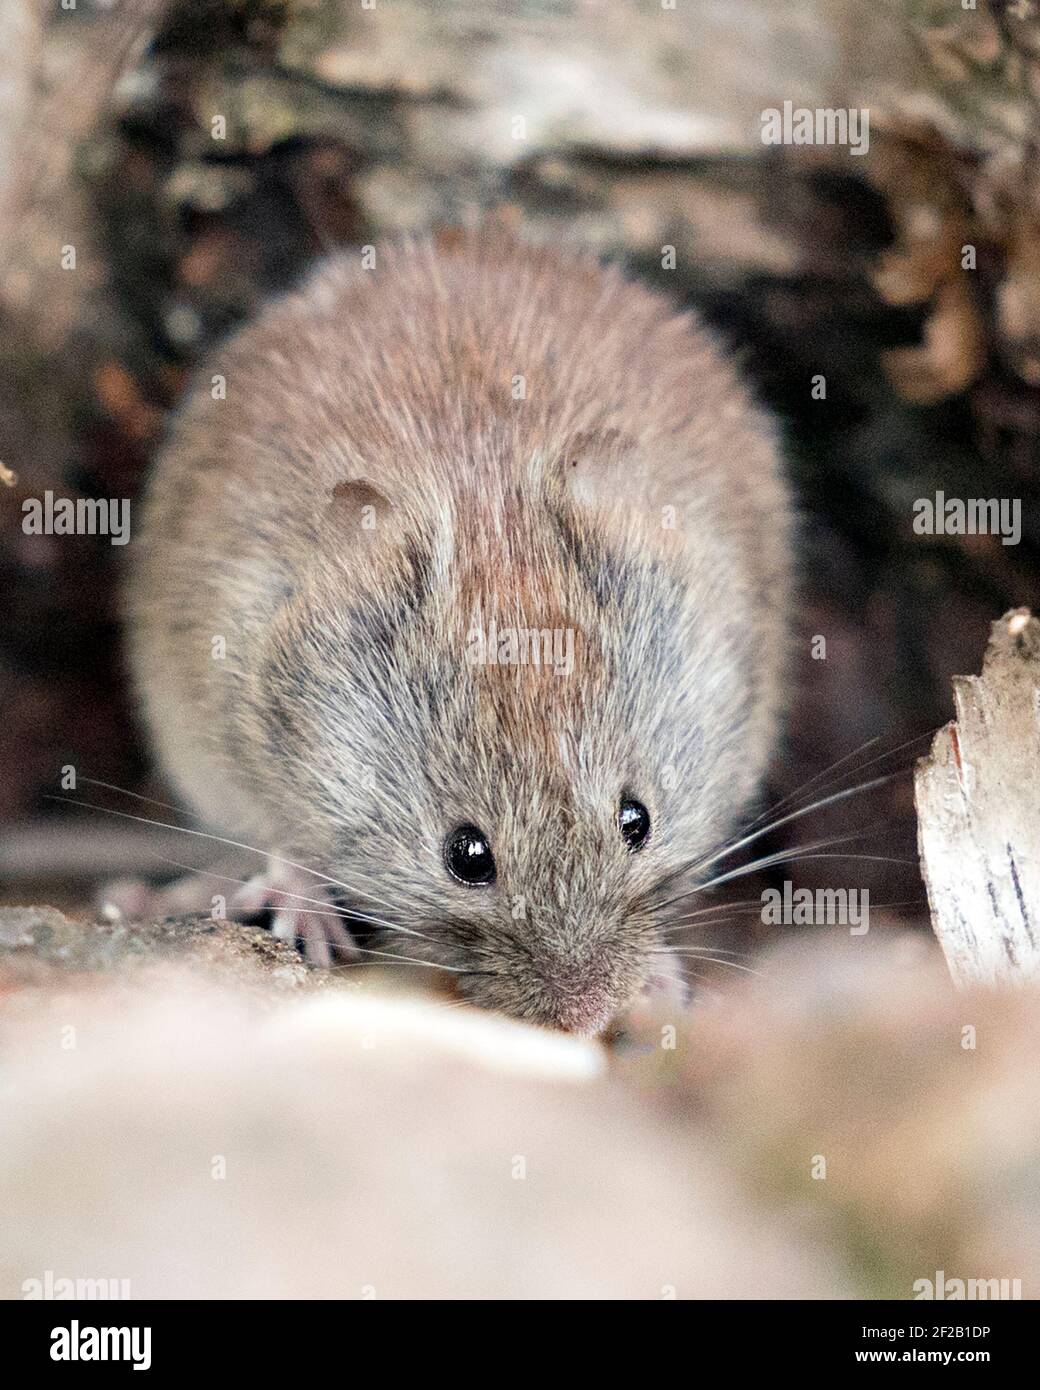 Vista del profilo in primo piano del mouse nella foresta mangiare e guardare la fotocamera nel suo ambiente e habitat con uno sfondo sfocato. Immagine. Immagine. Verticale Foto Stock